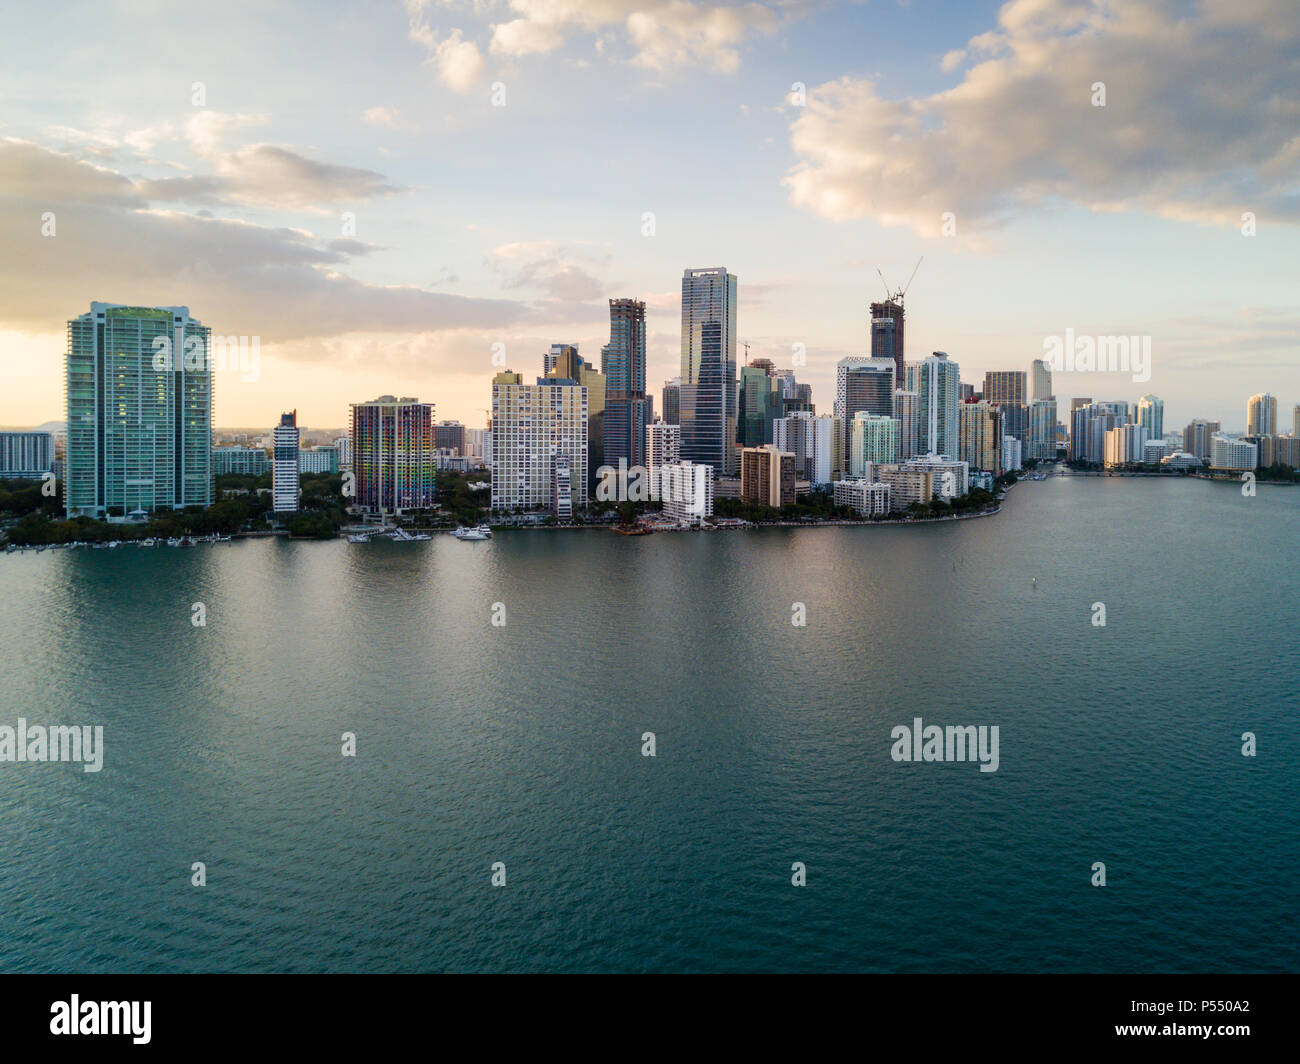 MIAMI, FLORIDE - CIRCA AVRIL 2017 : Vue aérienne de la baie de Biscayne et de Brickell Key Biscayne à Miami Banque D'Images